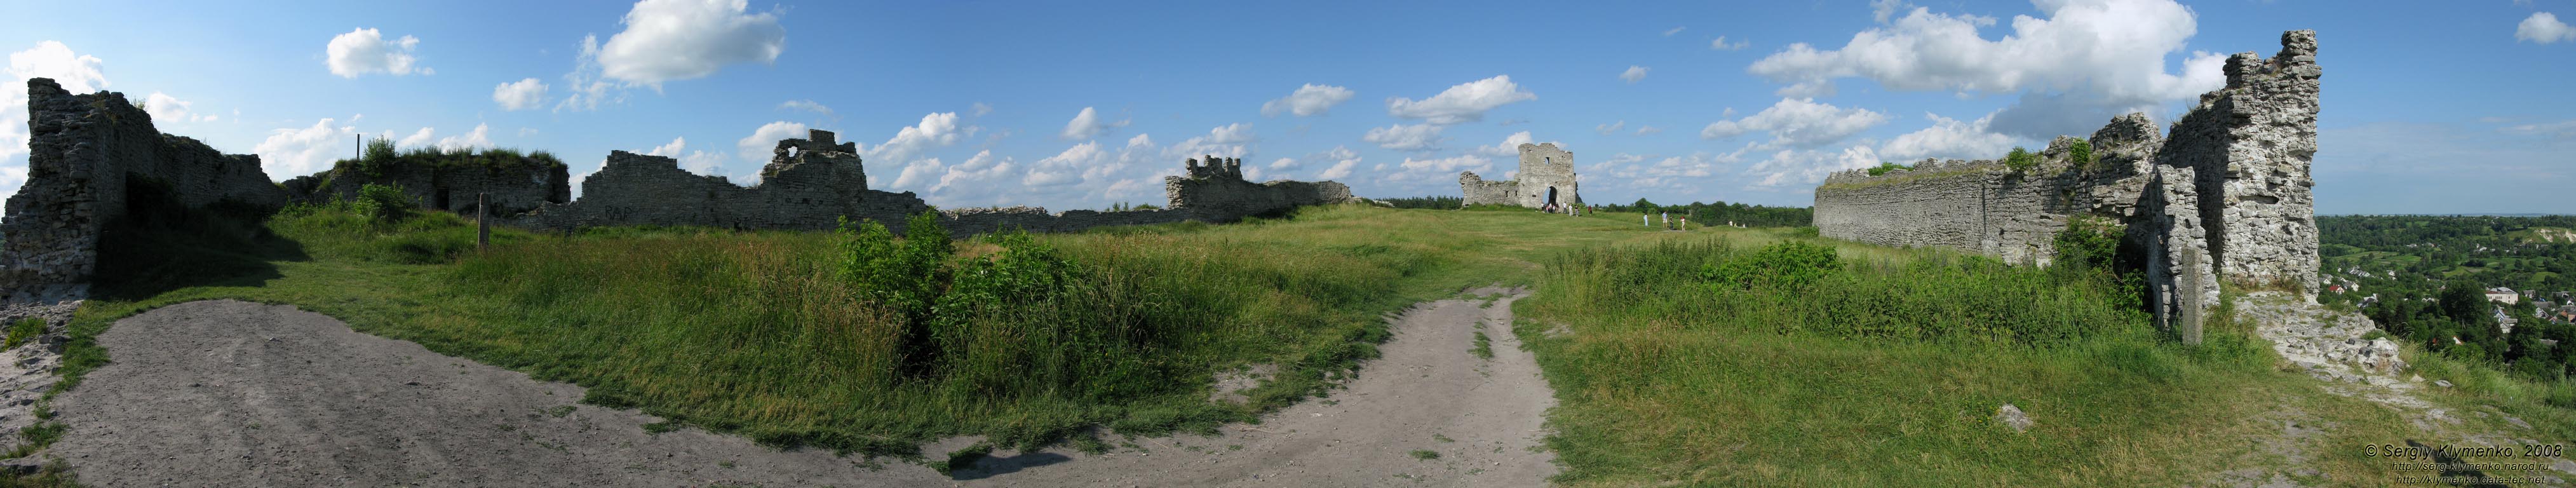 Кременец. Панорама руин когда-то могучей крепости («замка Боны») на Замковой горе (панорама ~120°).